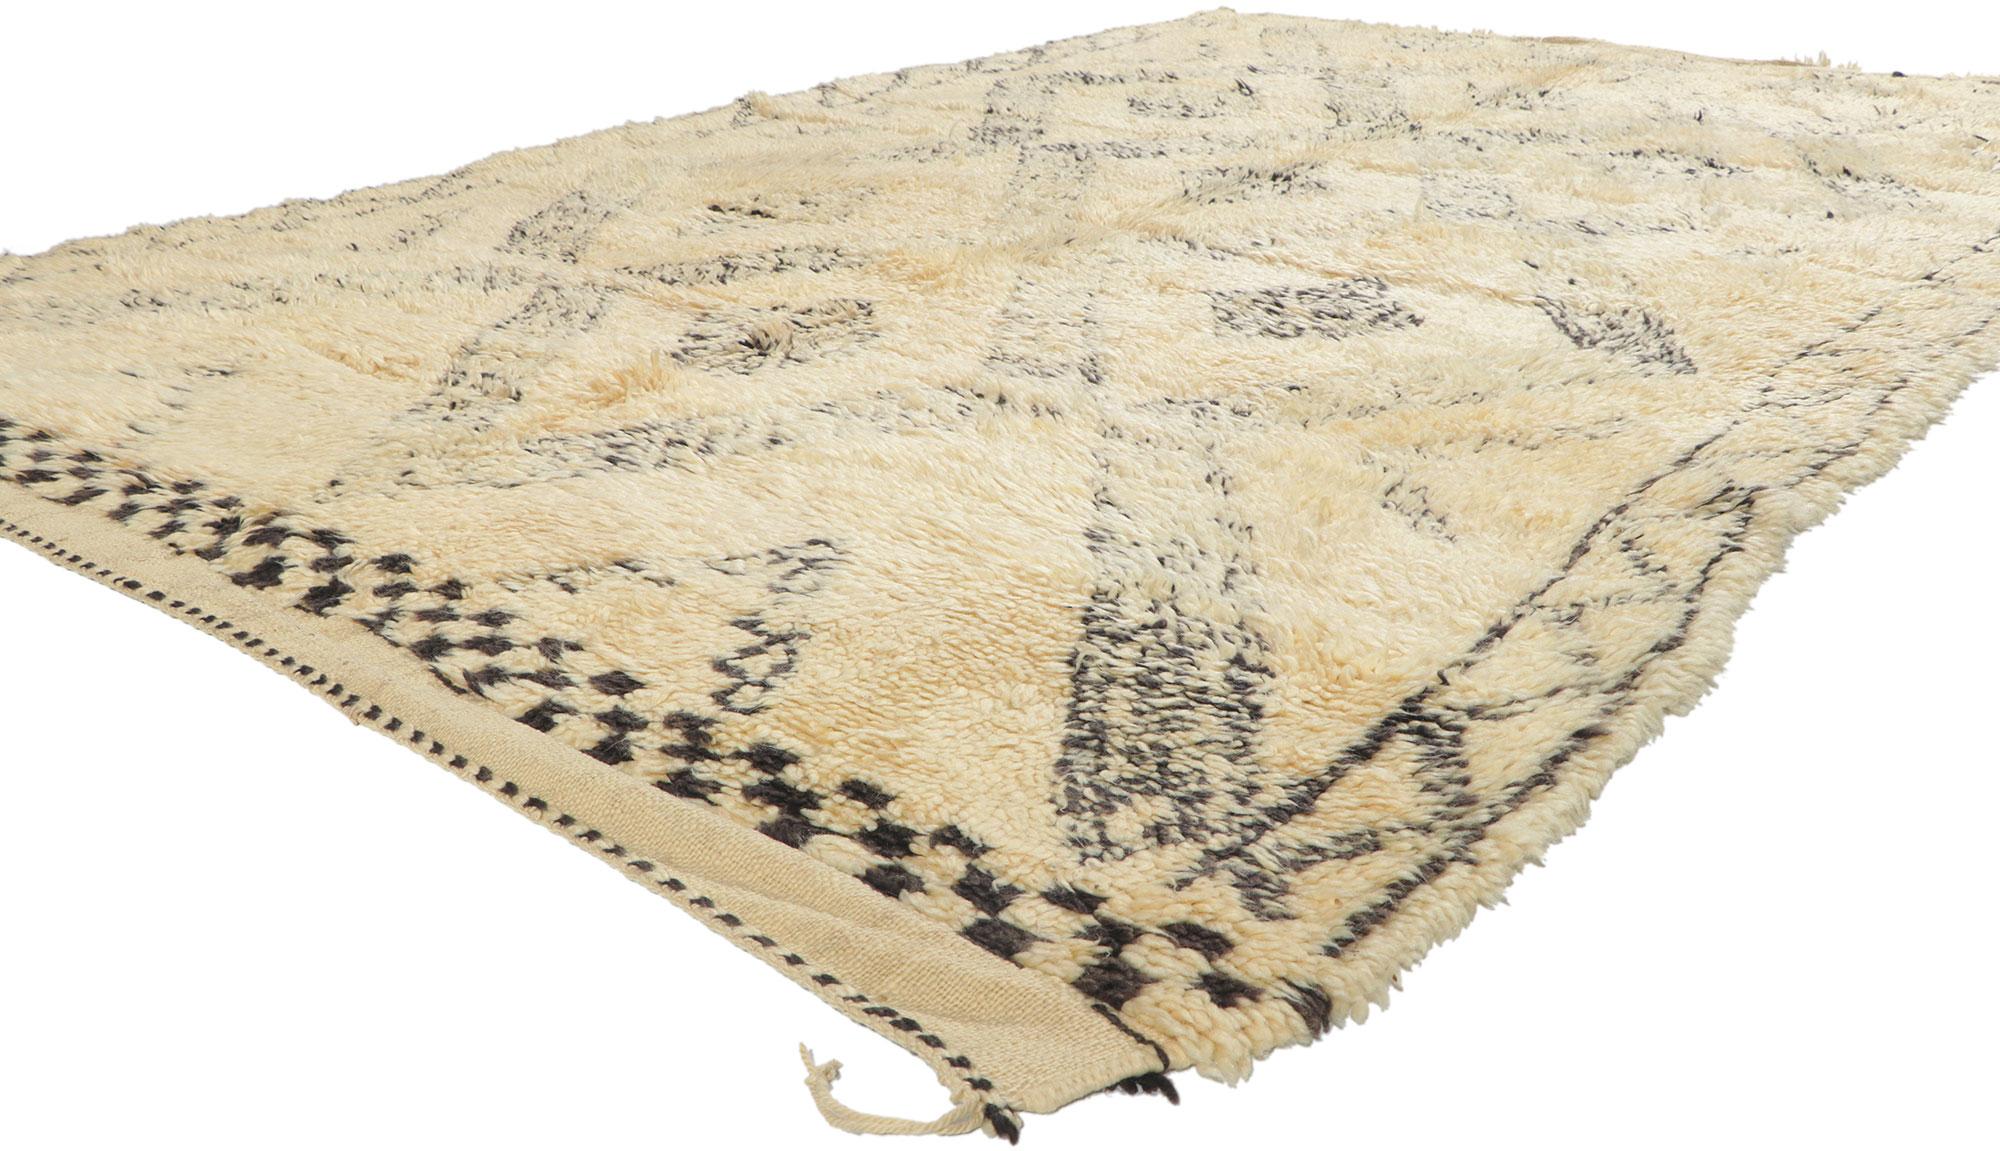 78384 Marokkanischer Vintage-Teppich Beni Ourain, 06'05 x 09'09. Dieser handgeknüpfte marokkanische Teppich aus Wolle im Vintage-Stil von Beni Ourain besticht durch seine Schlichtheit, seinen plüschigen Flor, seine unglaublichen Details und seine